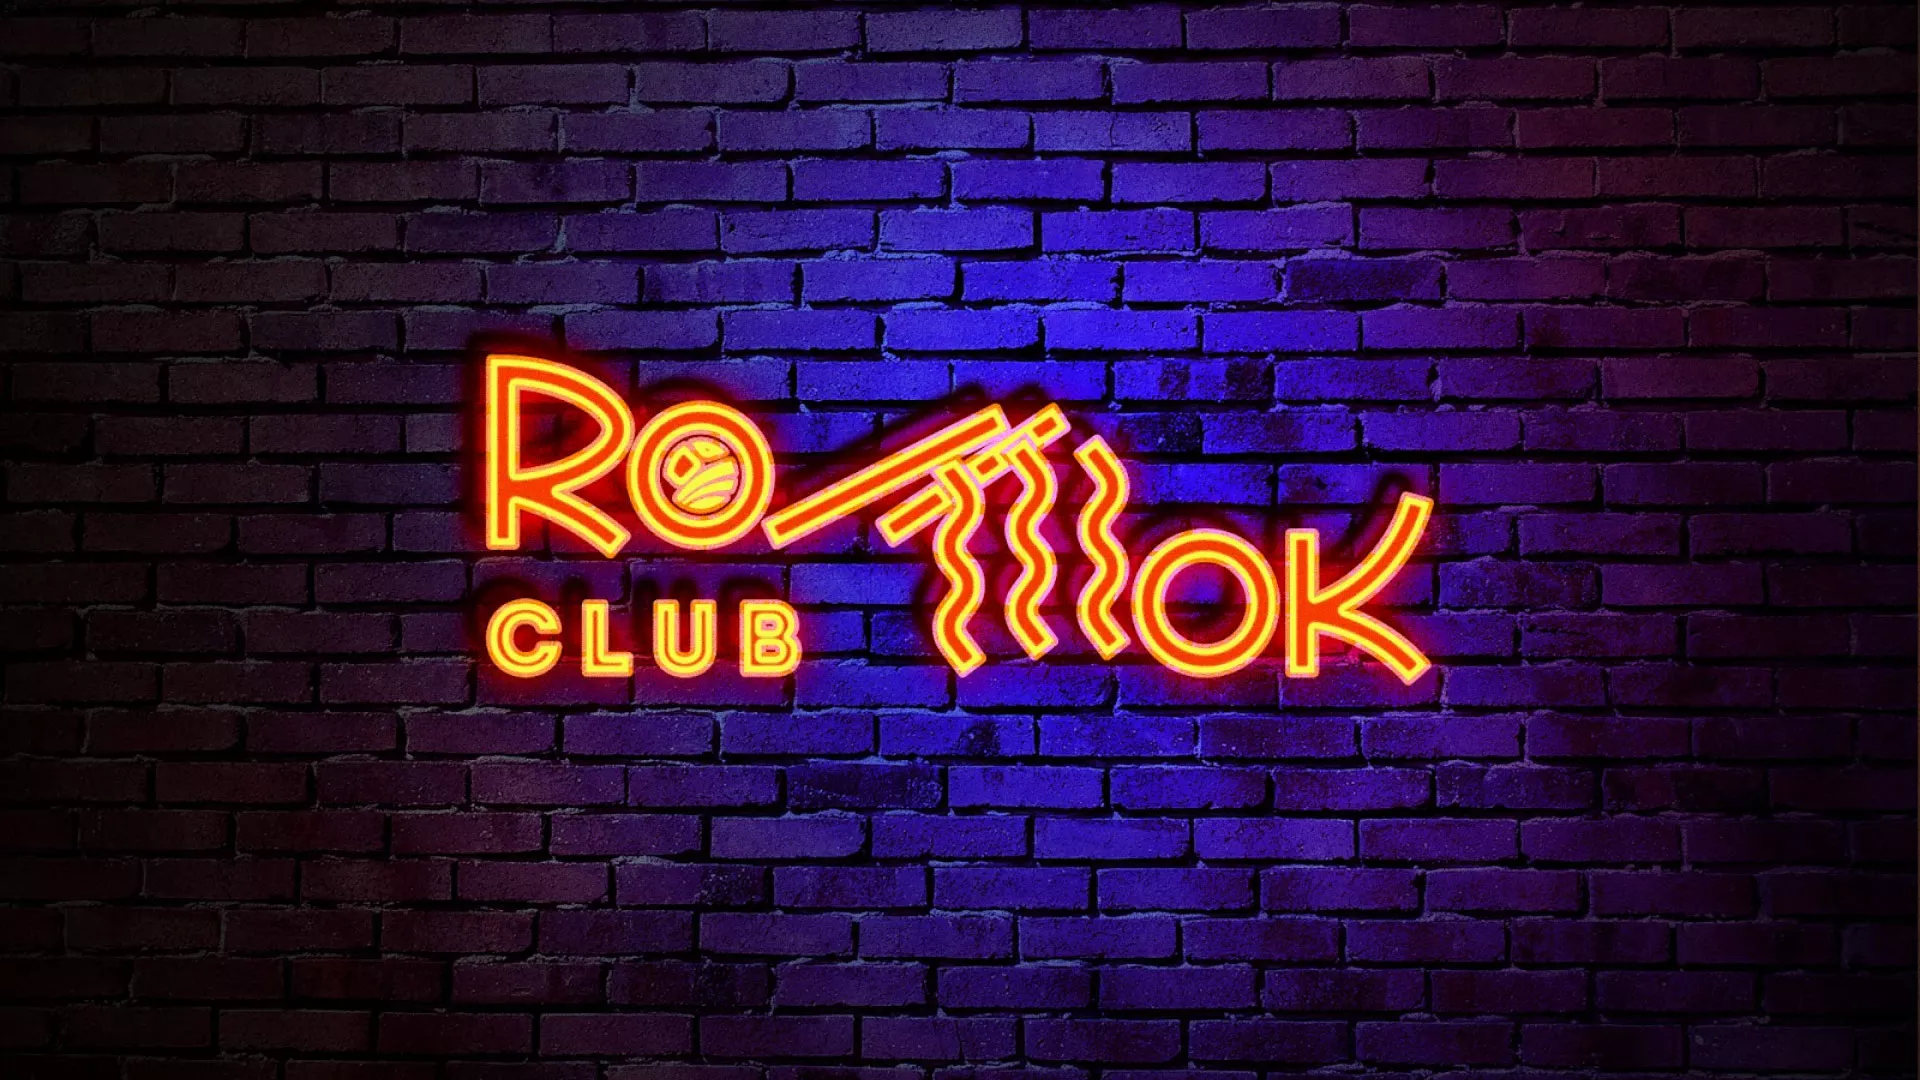 Разработка интерьерной вывески суши-бара «Roll Wok Club» в Звенигово